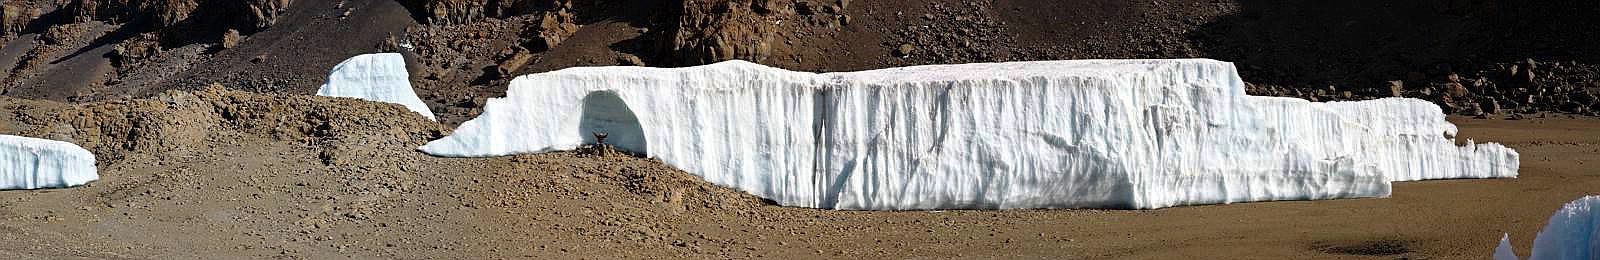 Das Südsegment des geteilten Furtwängler Gletscher in der Kibo-Kaldera im Jahr 2014 mit Eisgrotte und Person vor der Eisgrotte zum Größenvergleich, von Norden gesehen.